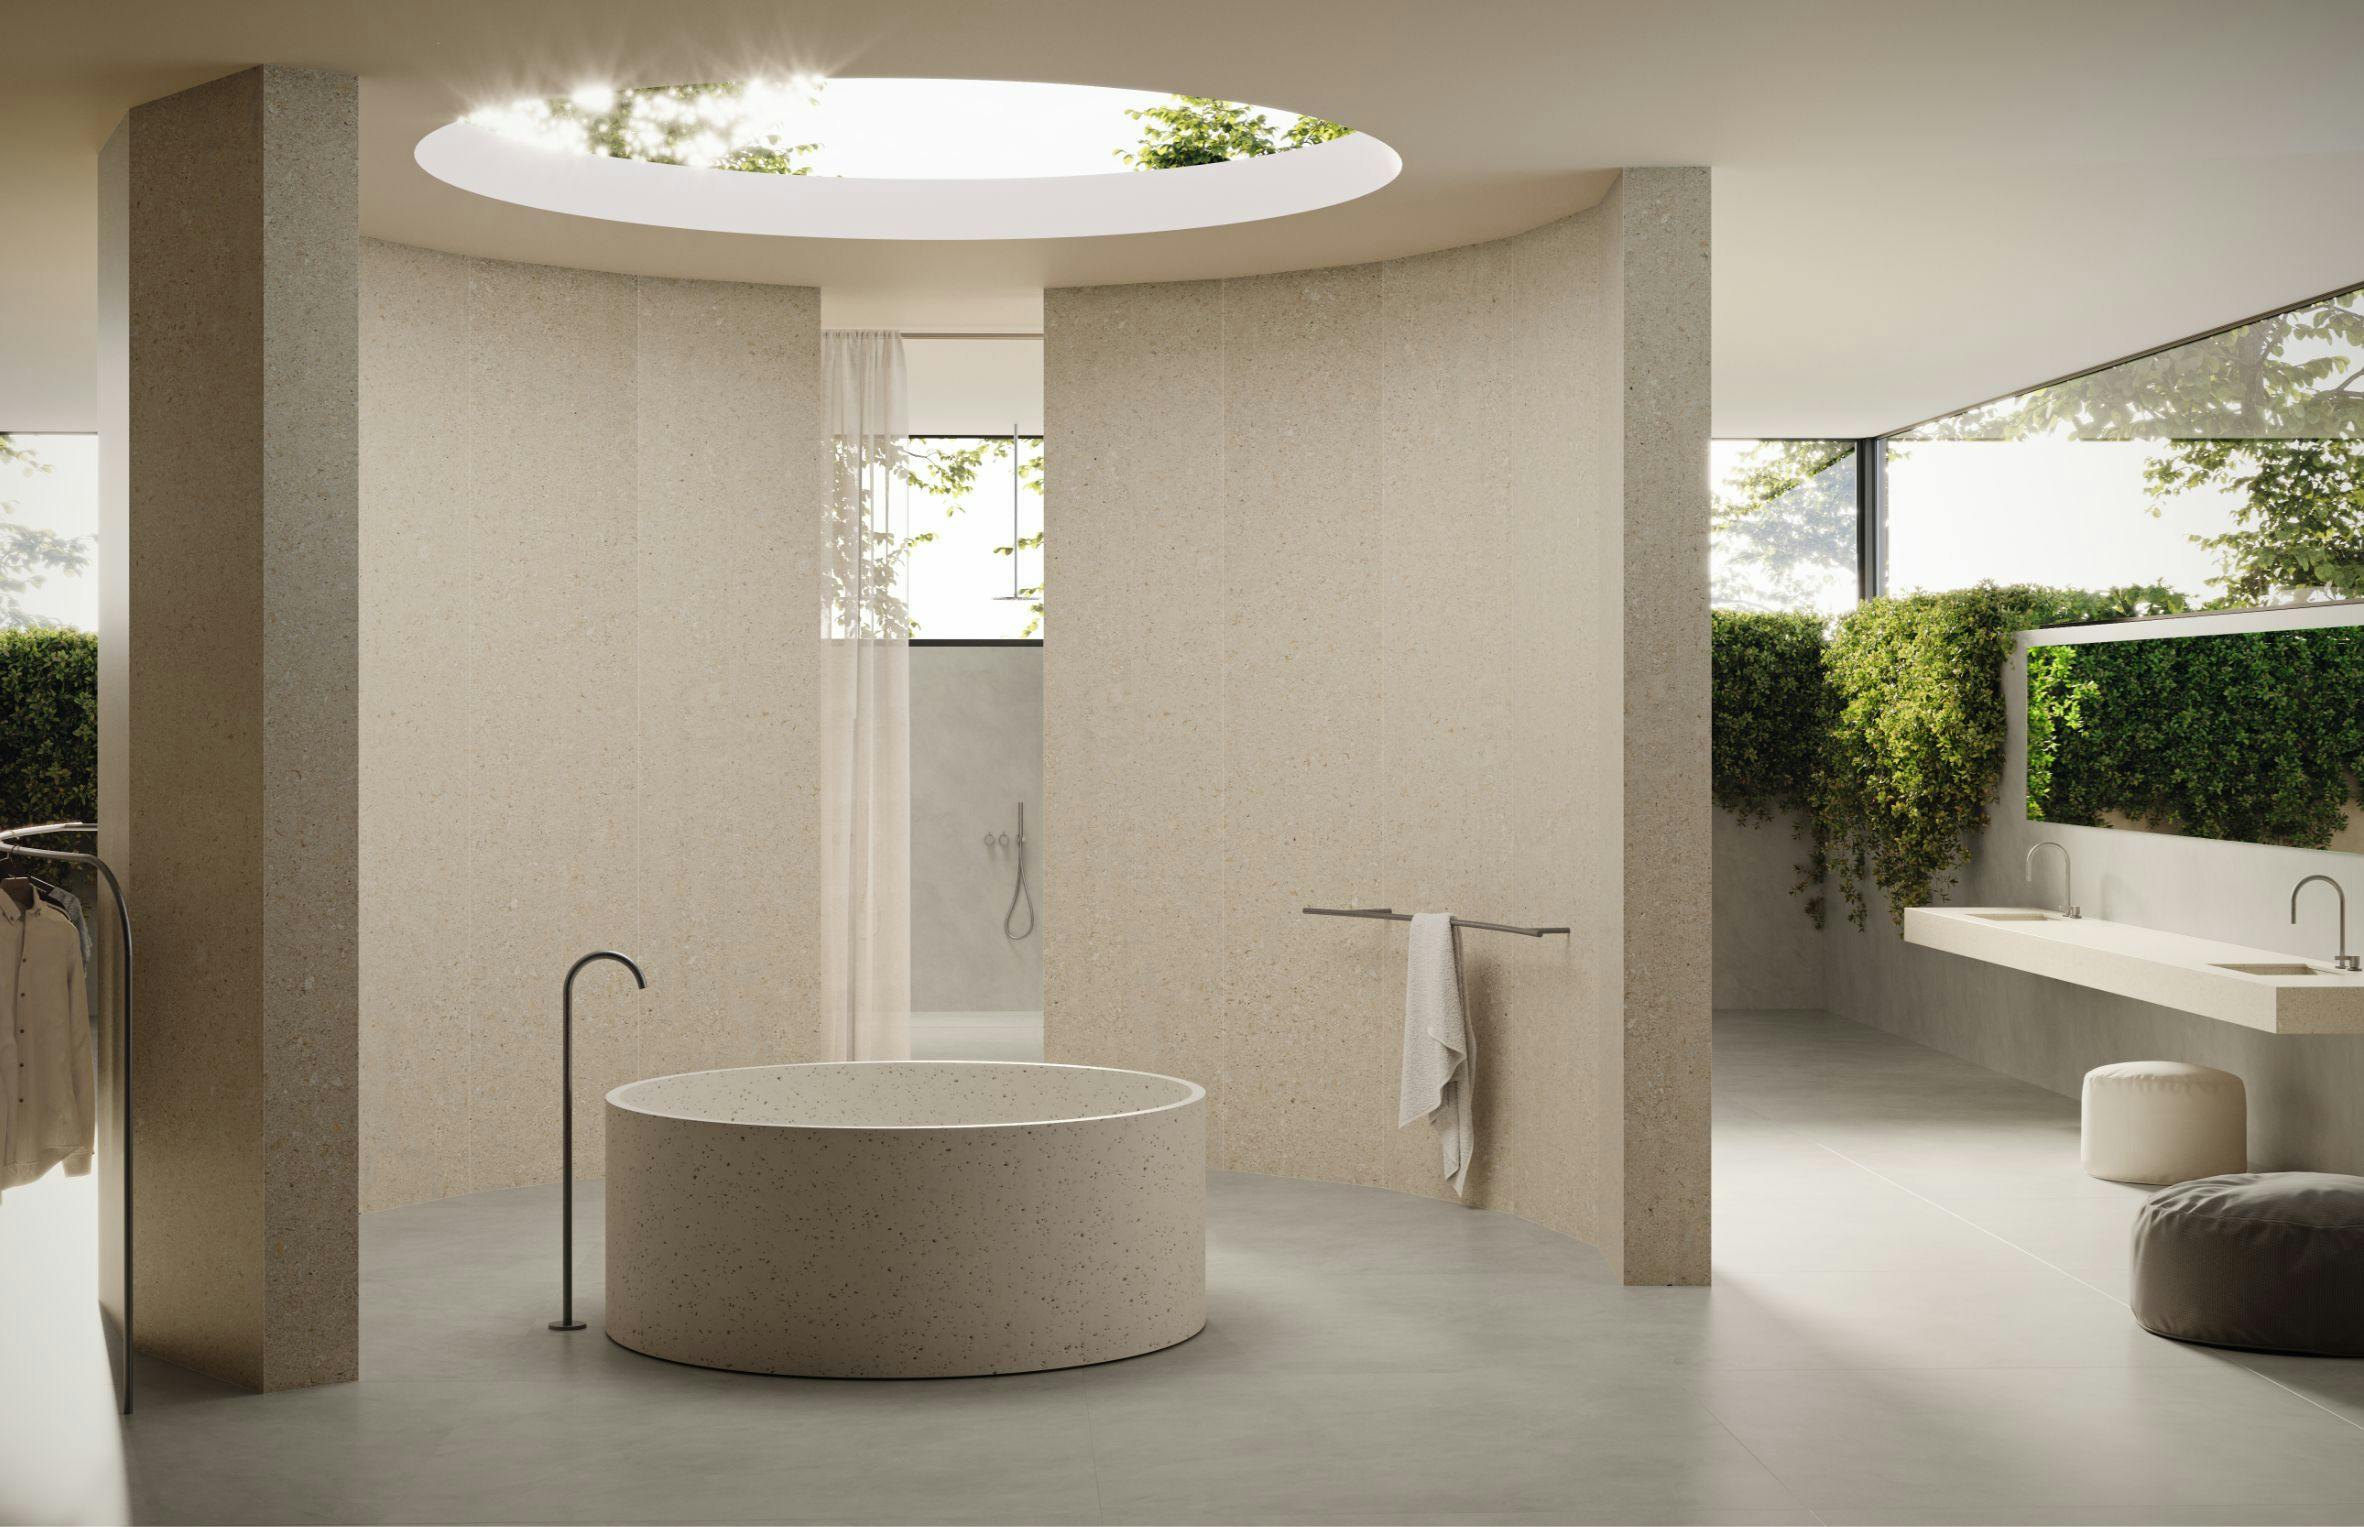 Numero immagine 41 della sezione corrente di Natural light partners with DKTN Marmorio to create an enveloping, sophisticated bathroom di Cosentino Italia